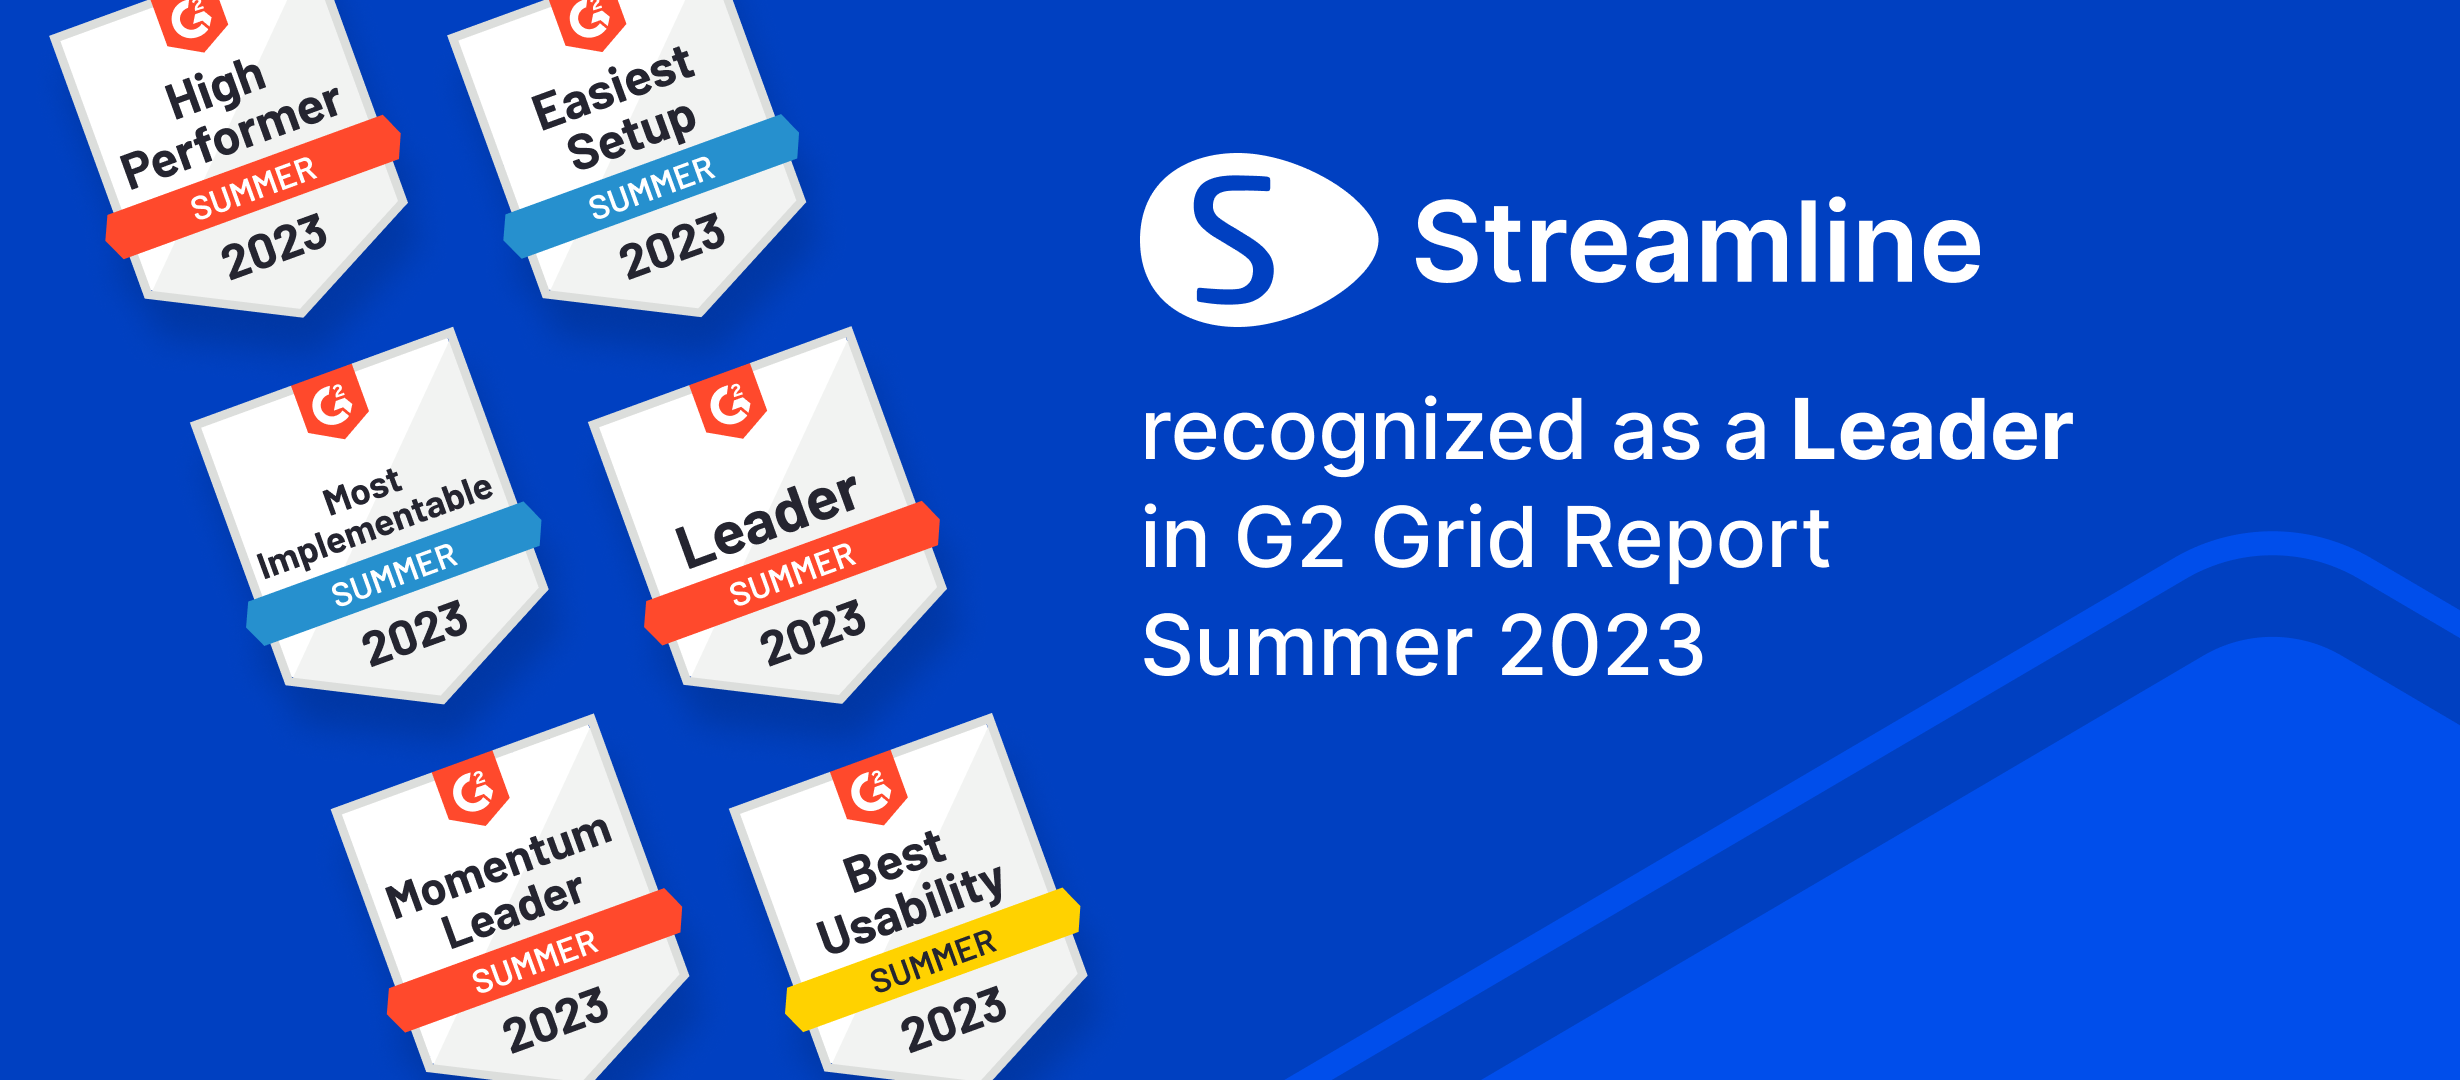 GMDH Streamline נבחר למנהיג בקטגוריות מרובות בדוחות G2 Summer'23 | GMDH